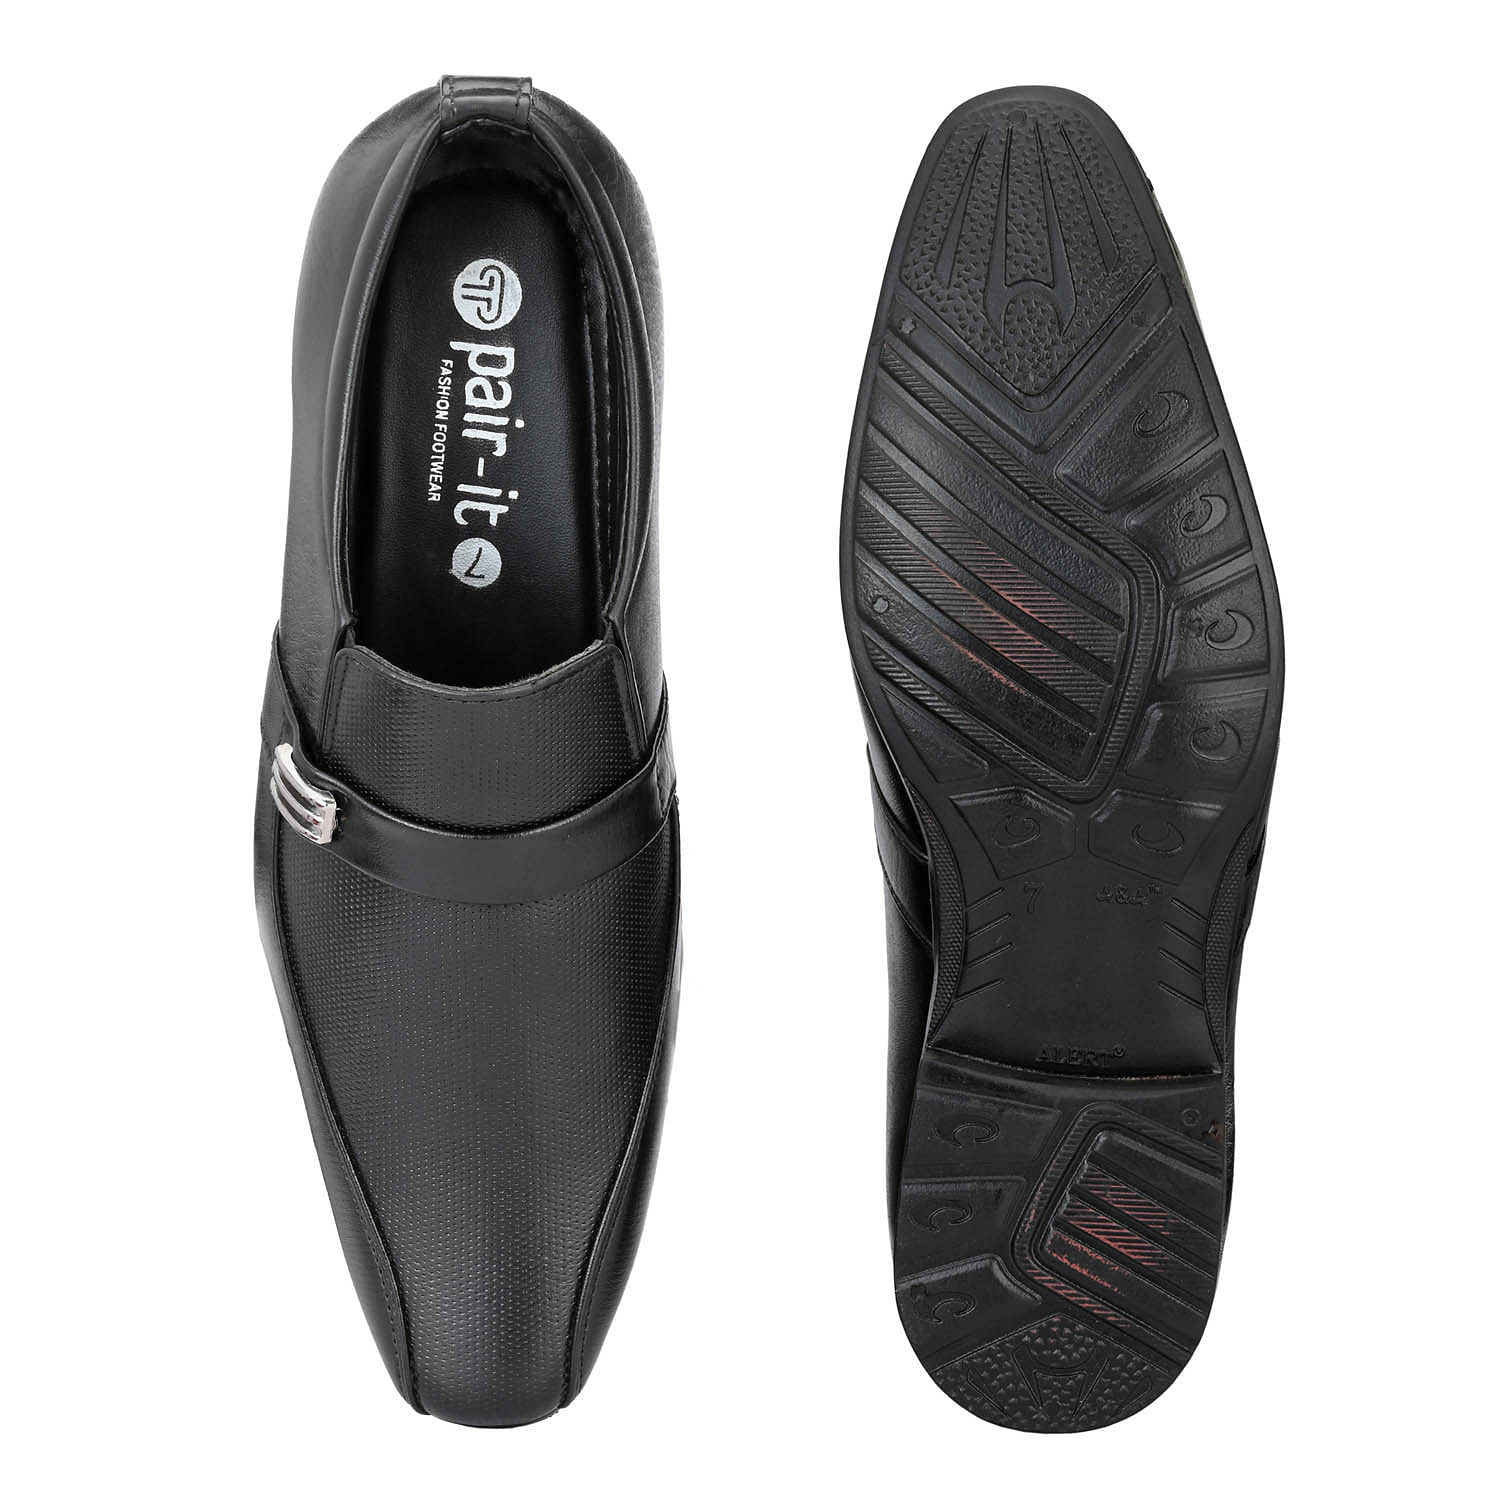 Pair-it Men moccasin Formal Shoes - MN-RYDER219-Black